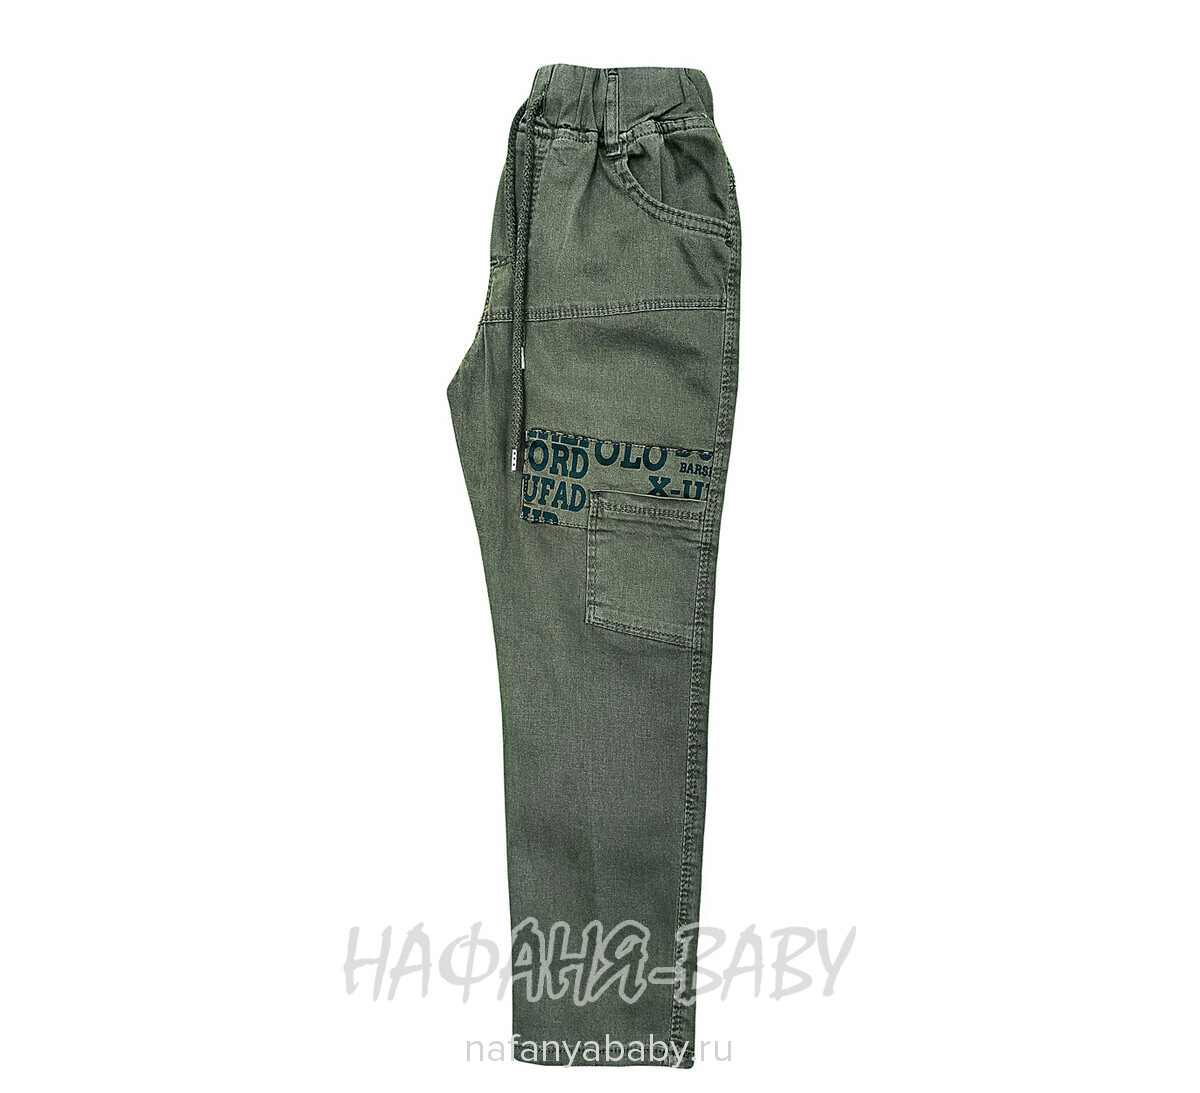 Подростковые летние брюки YAVRUCAK арт: 5256, 8-12 лет, цвет темный защитный хаки, оптом Турция